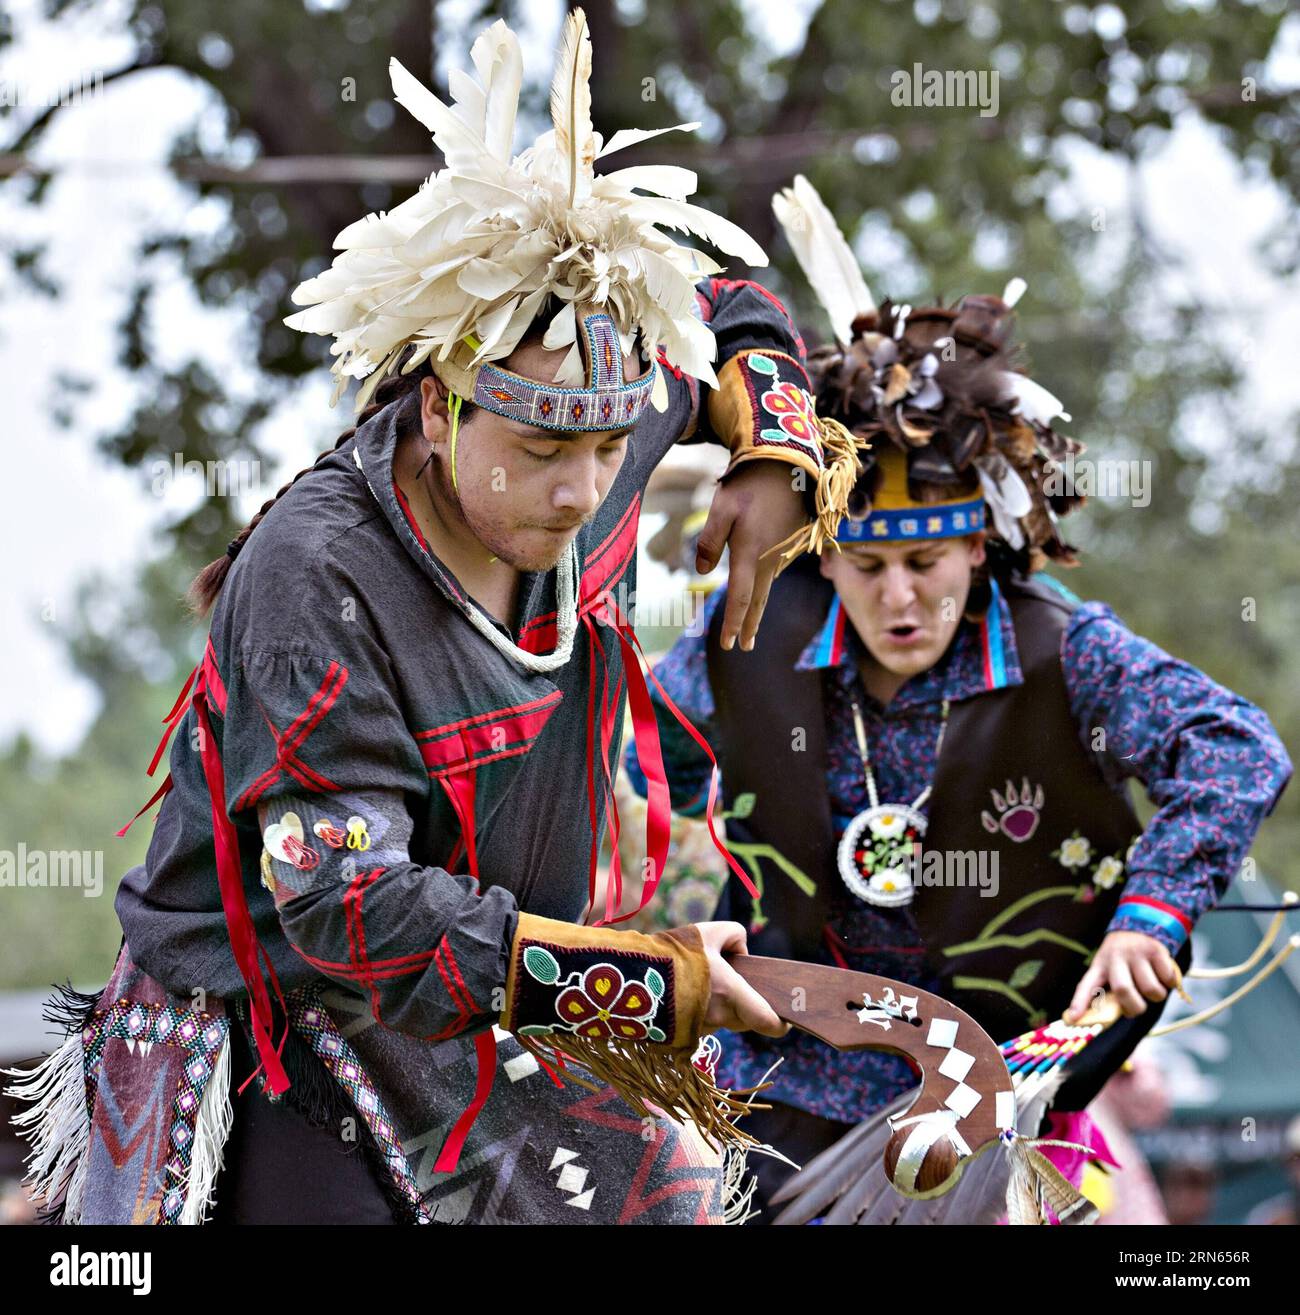 Le persone che indossano costumi tradizionali ballano durante gli echi di una nazione Powwow alla riserva Kahnawake vicino a Montreal, Canada, l'11 luglio 2015. Il Powwow è ospitato ogni anno dalla tribù locale Mohawk. ) CANADA-MONTREAL-CULTURA-INDIGENI-RADUNO AndrewxSoong PUBLICATIONxNOTxINxCHN celebrità che indossano costumi tradizionali Danza durante gli ECHI di una Nazione Powwow ALLA riserva di Kahnawake vicino a Montreal Canada L'11 luglio 2015 il Powwow È ospitato annualmente dalla tribù locale Mohawk Canada Cultura di Montreal celebrità indigene Gathering AndrewxSoong PUBLICATIONXNOTxINxCHN Foto Stock